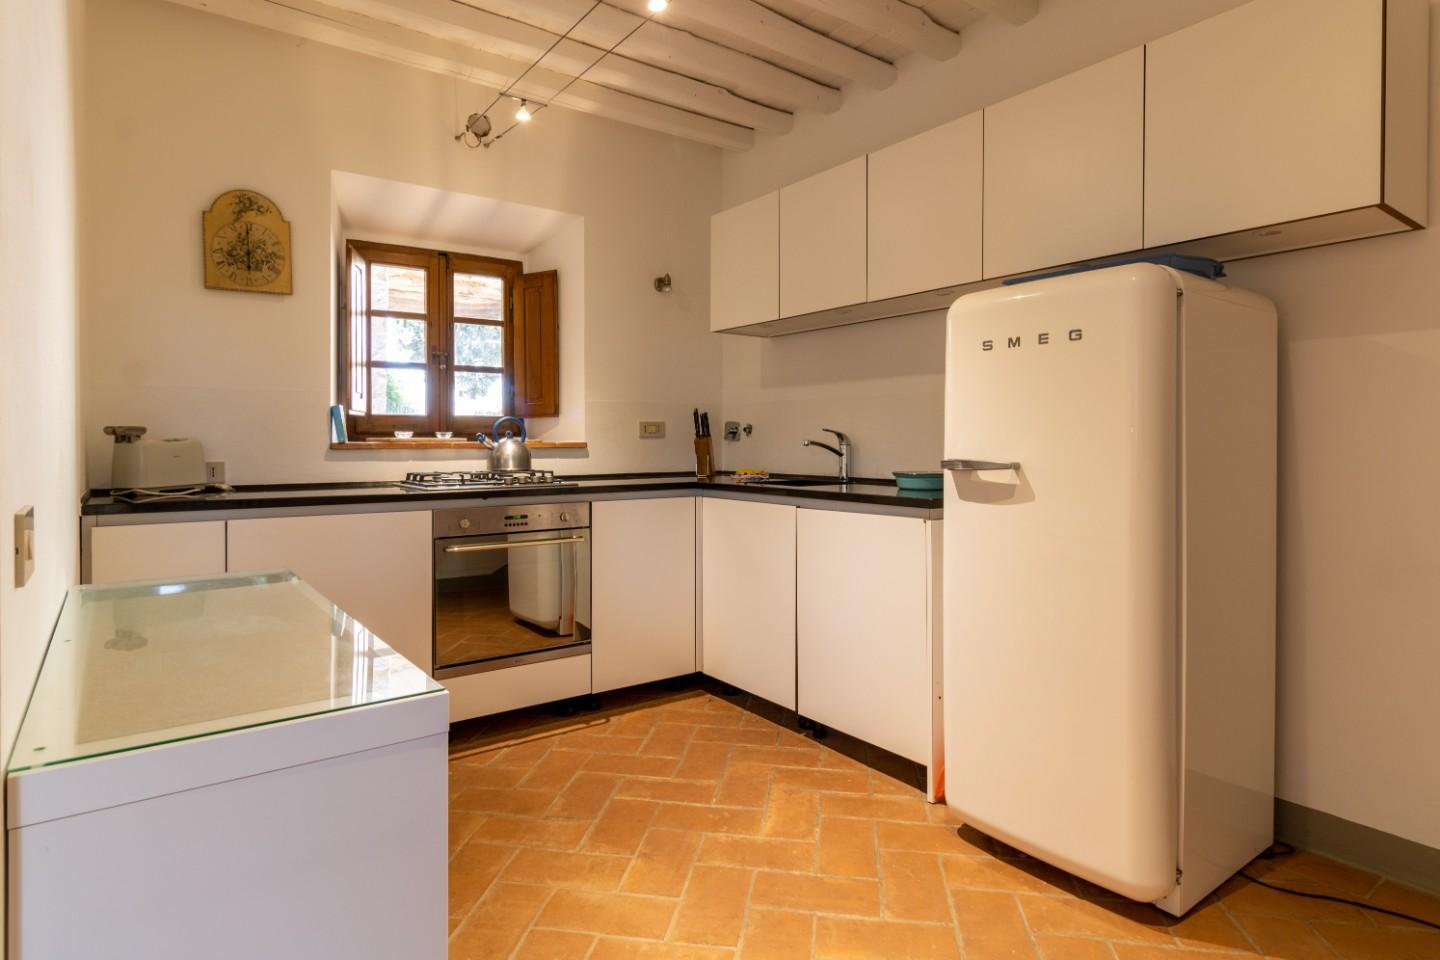 Appartamento in vendita a Gaiole in Chianti, 4 locali, prezzo € 400.000 | PortaleAgenzieImmobiliari.it